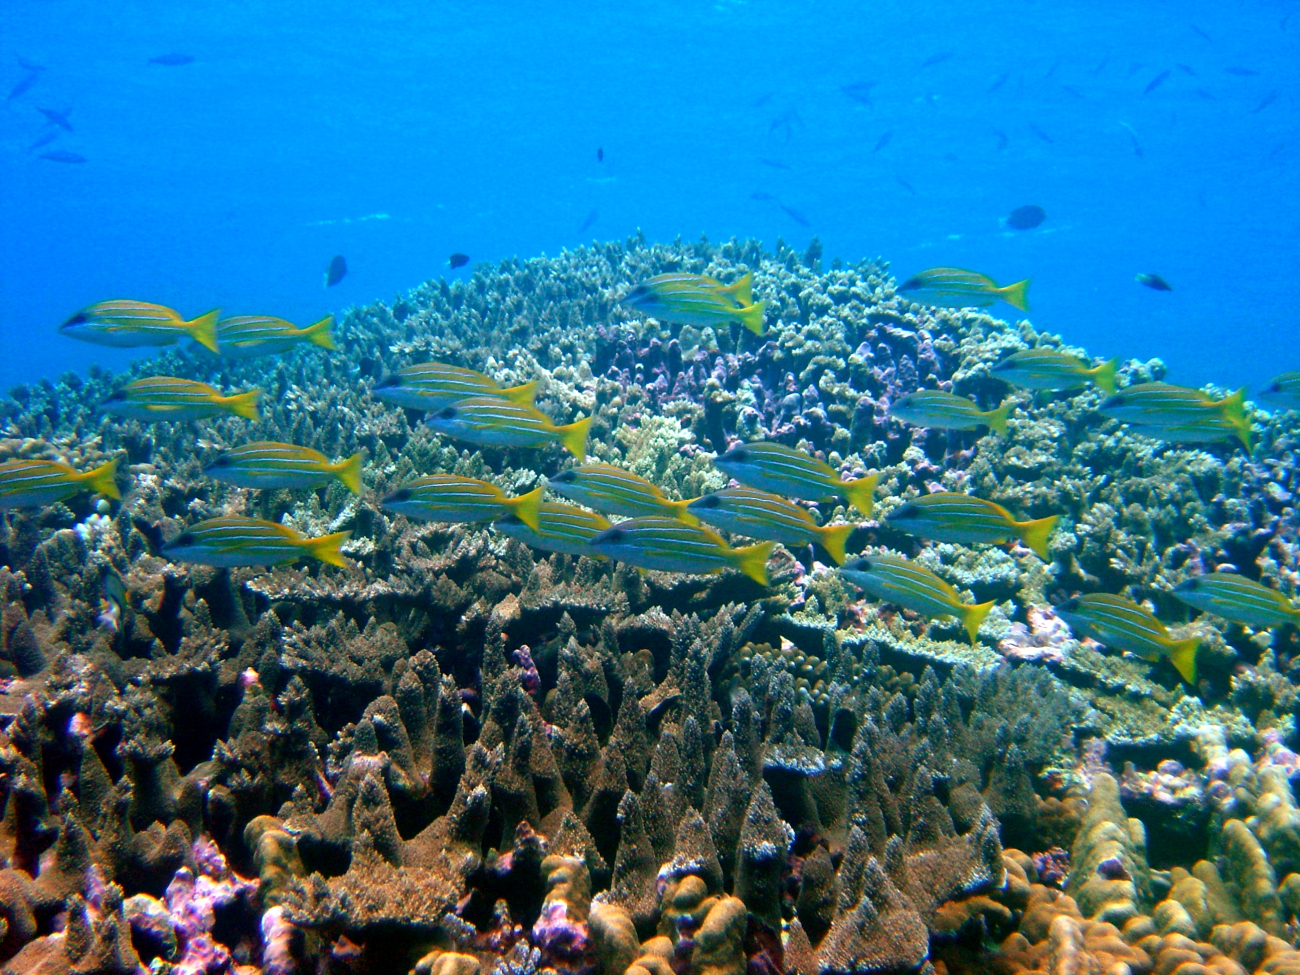 Reef scene with school of bluestripe snapper (Lutjanus kasmira)